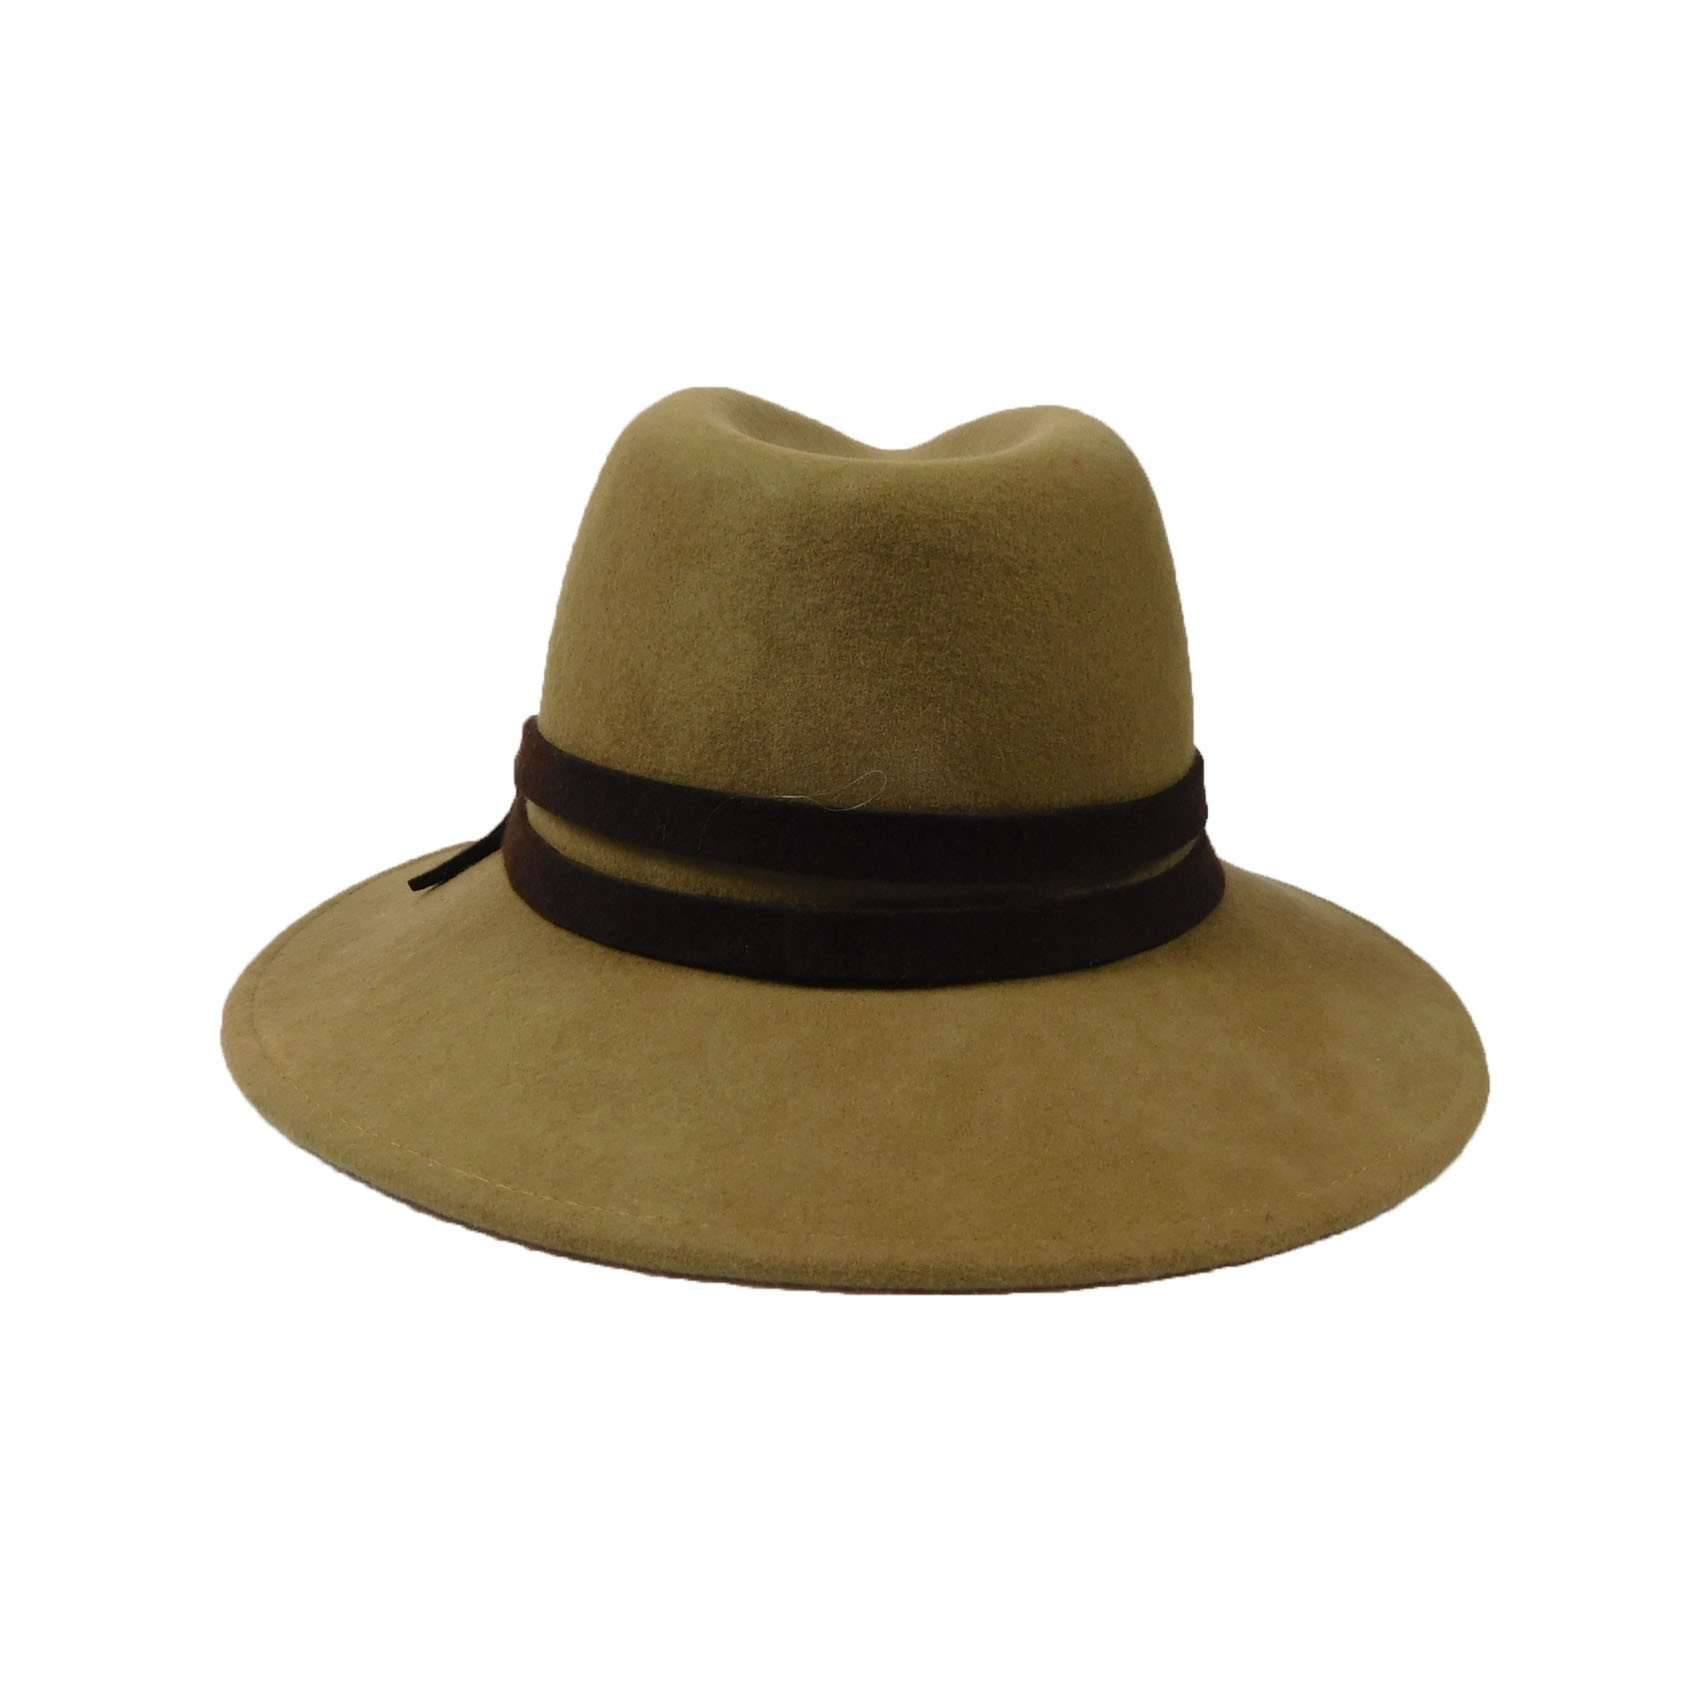 Women's Wool Felt Outback Style Hat Safari Hat Jeanne Simmons    